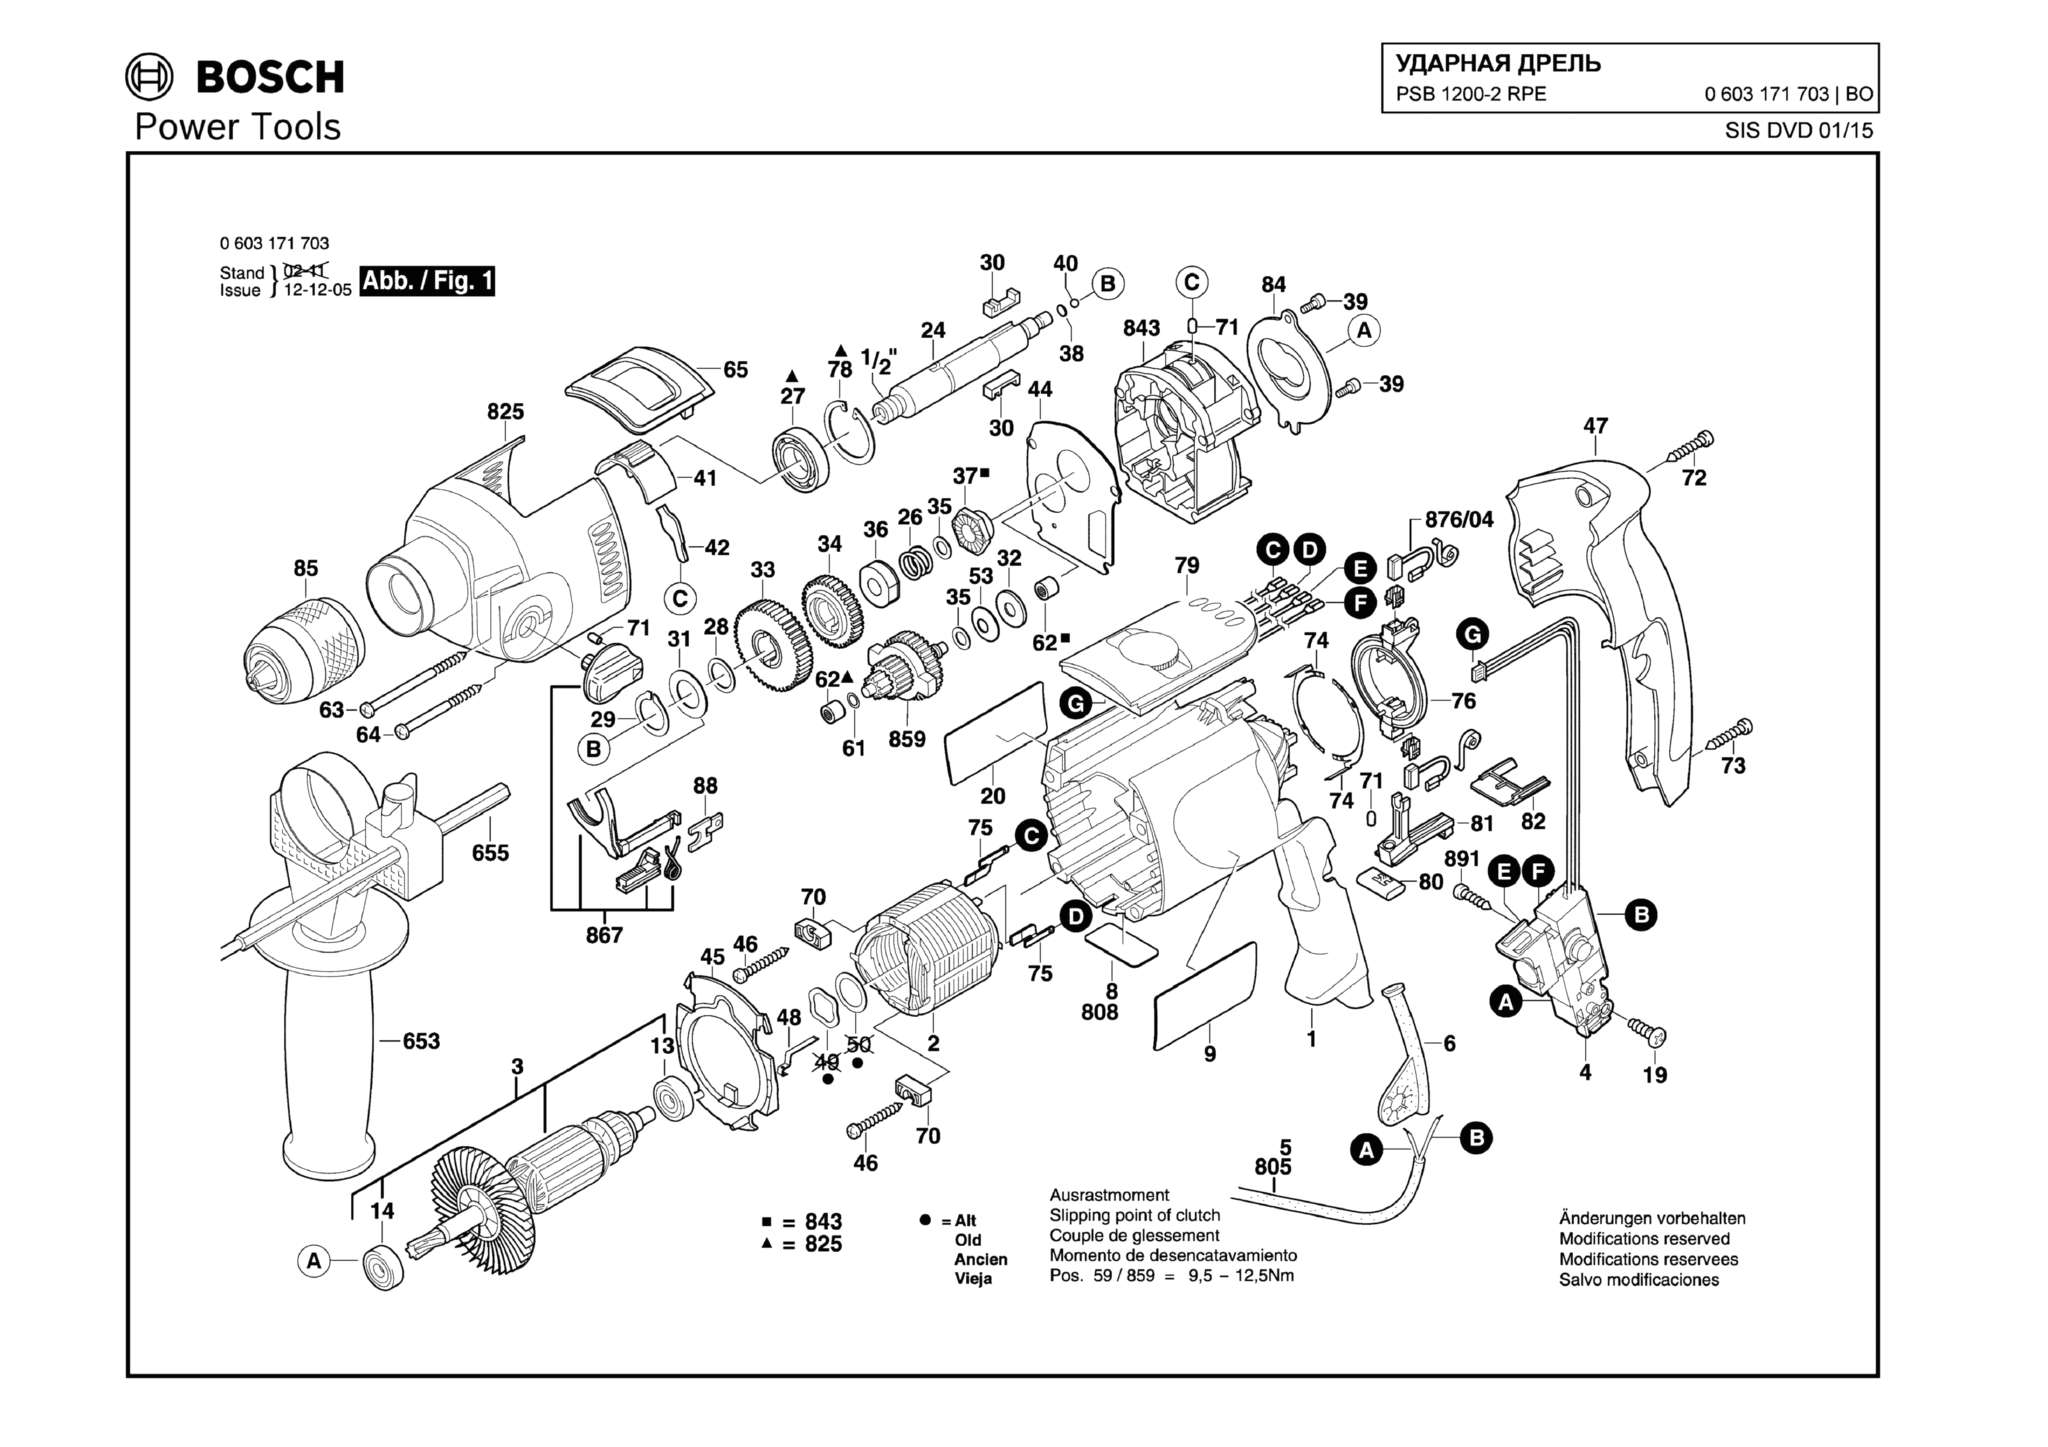 Запчасти, схема и деталировка Bosch PSB 1200-2 RPE (ТИП 0603171703)